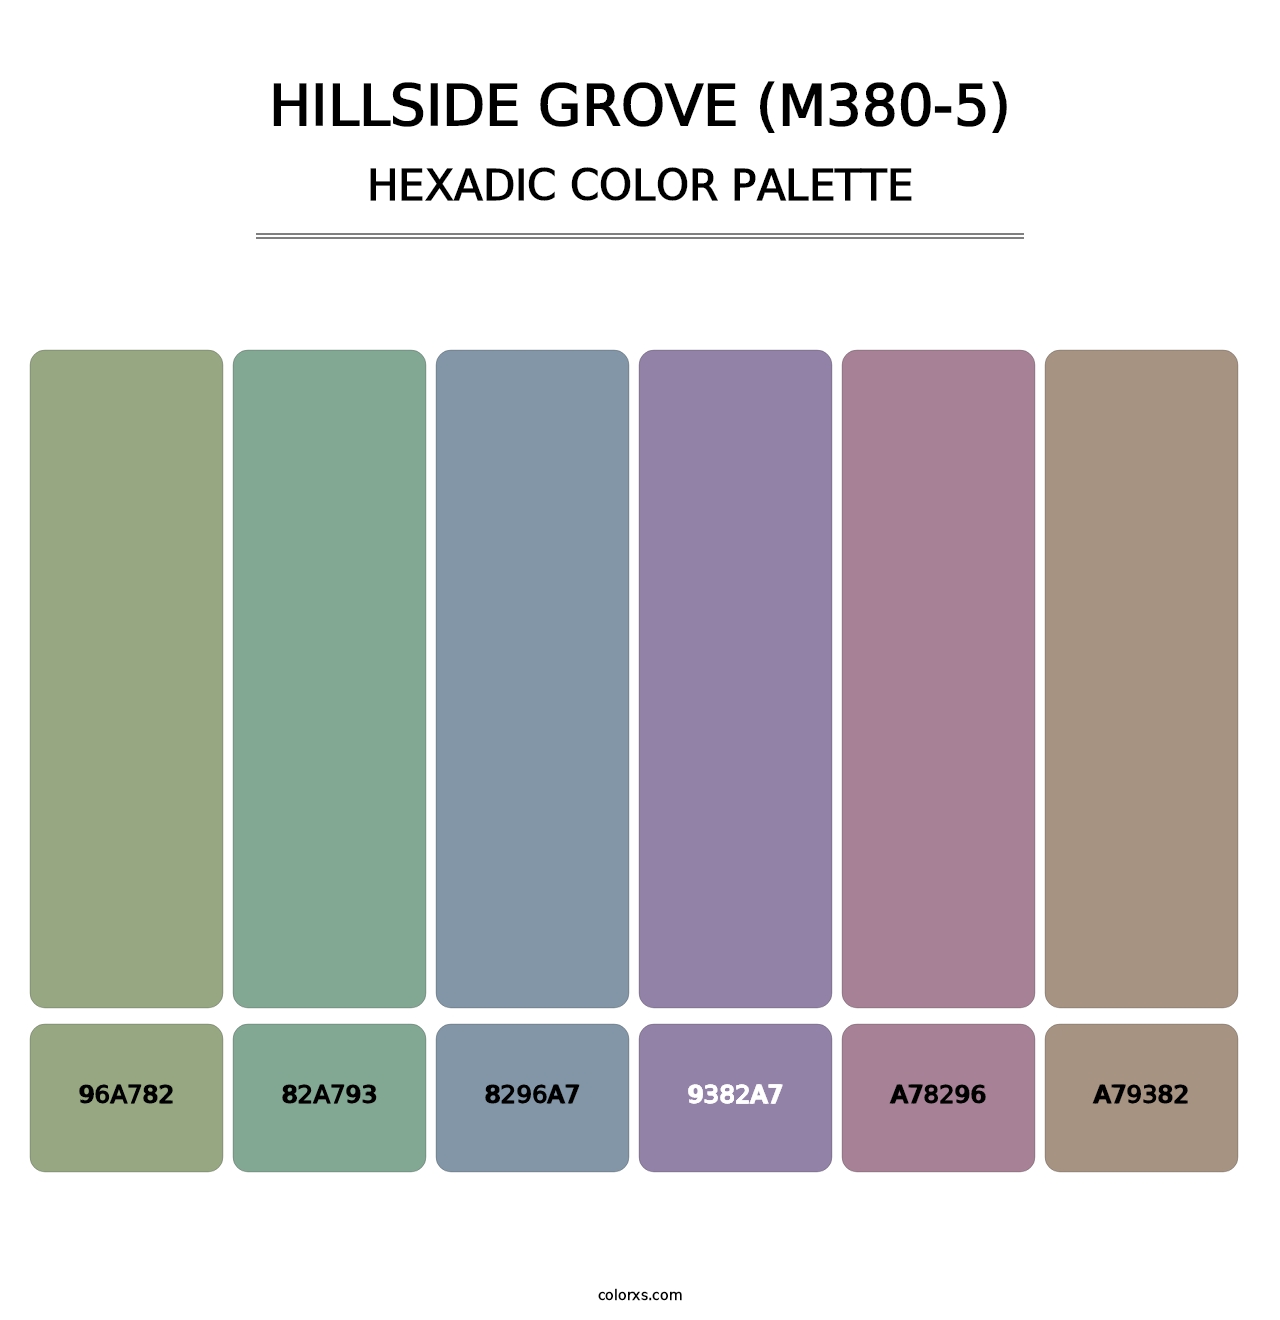 Hillside Grove (M380-5) - Hexadic Color Palette